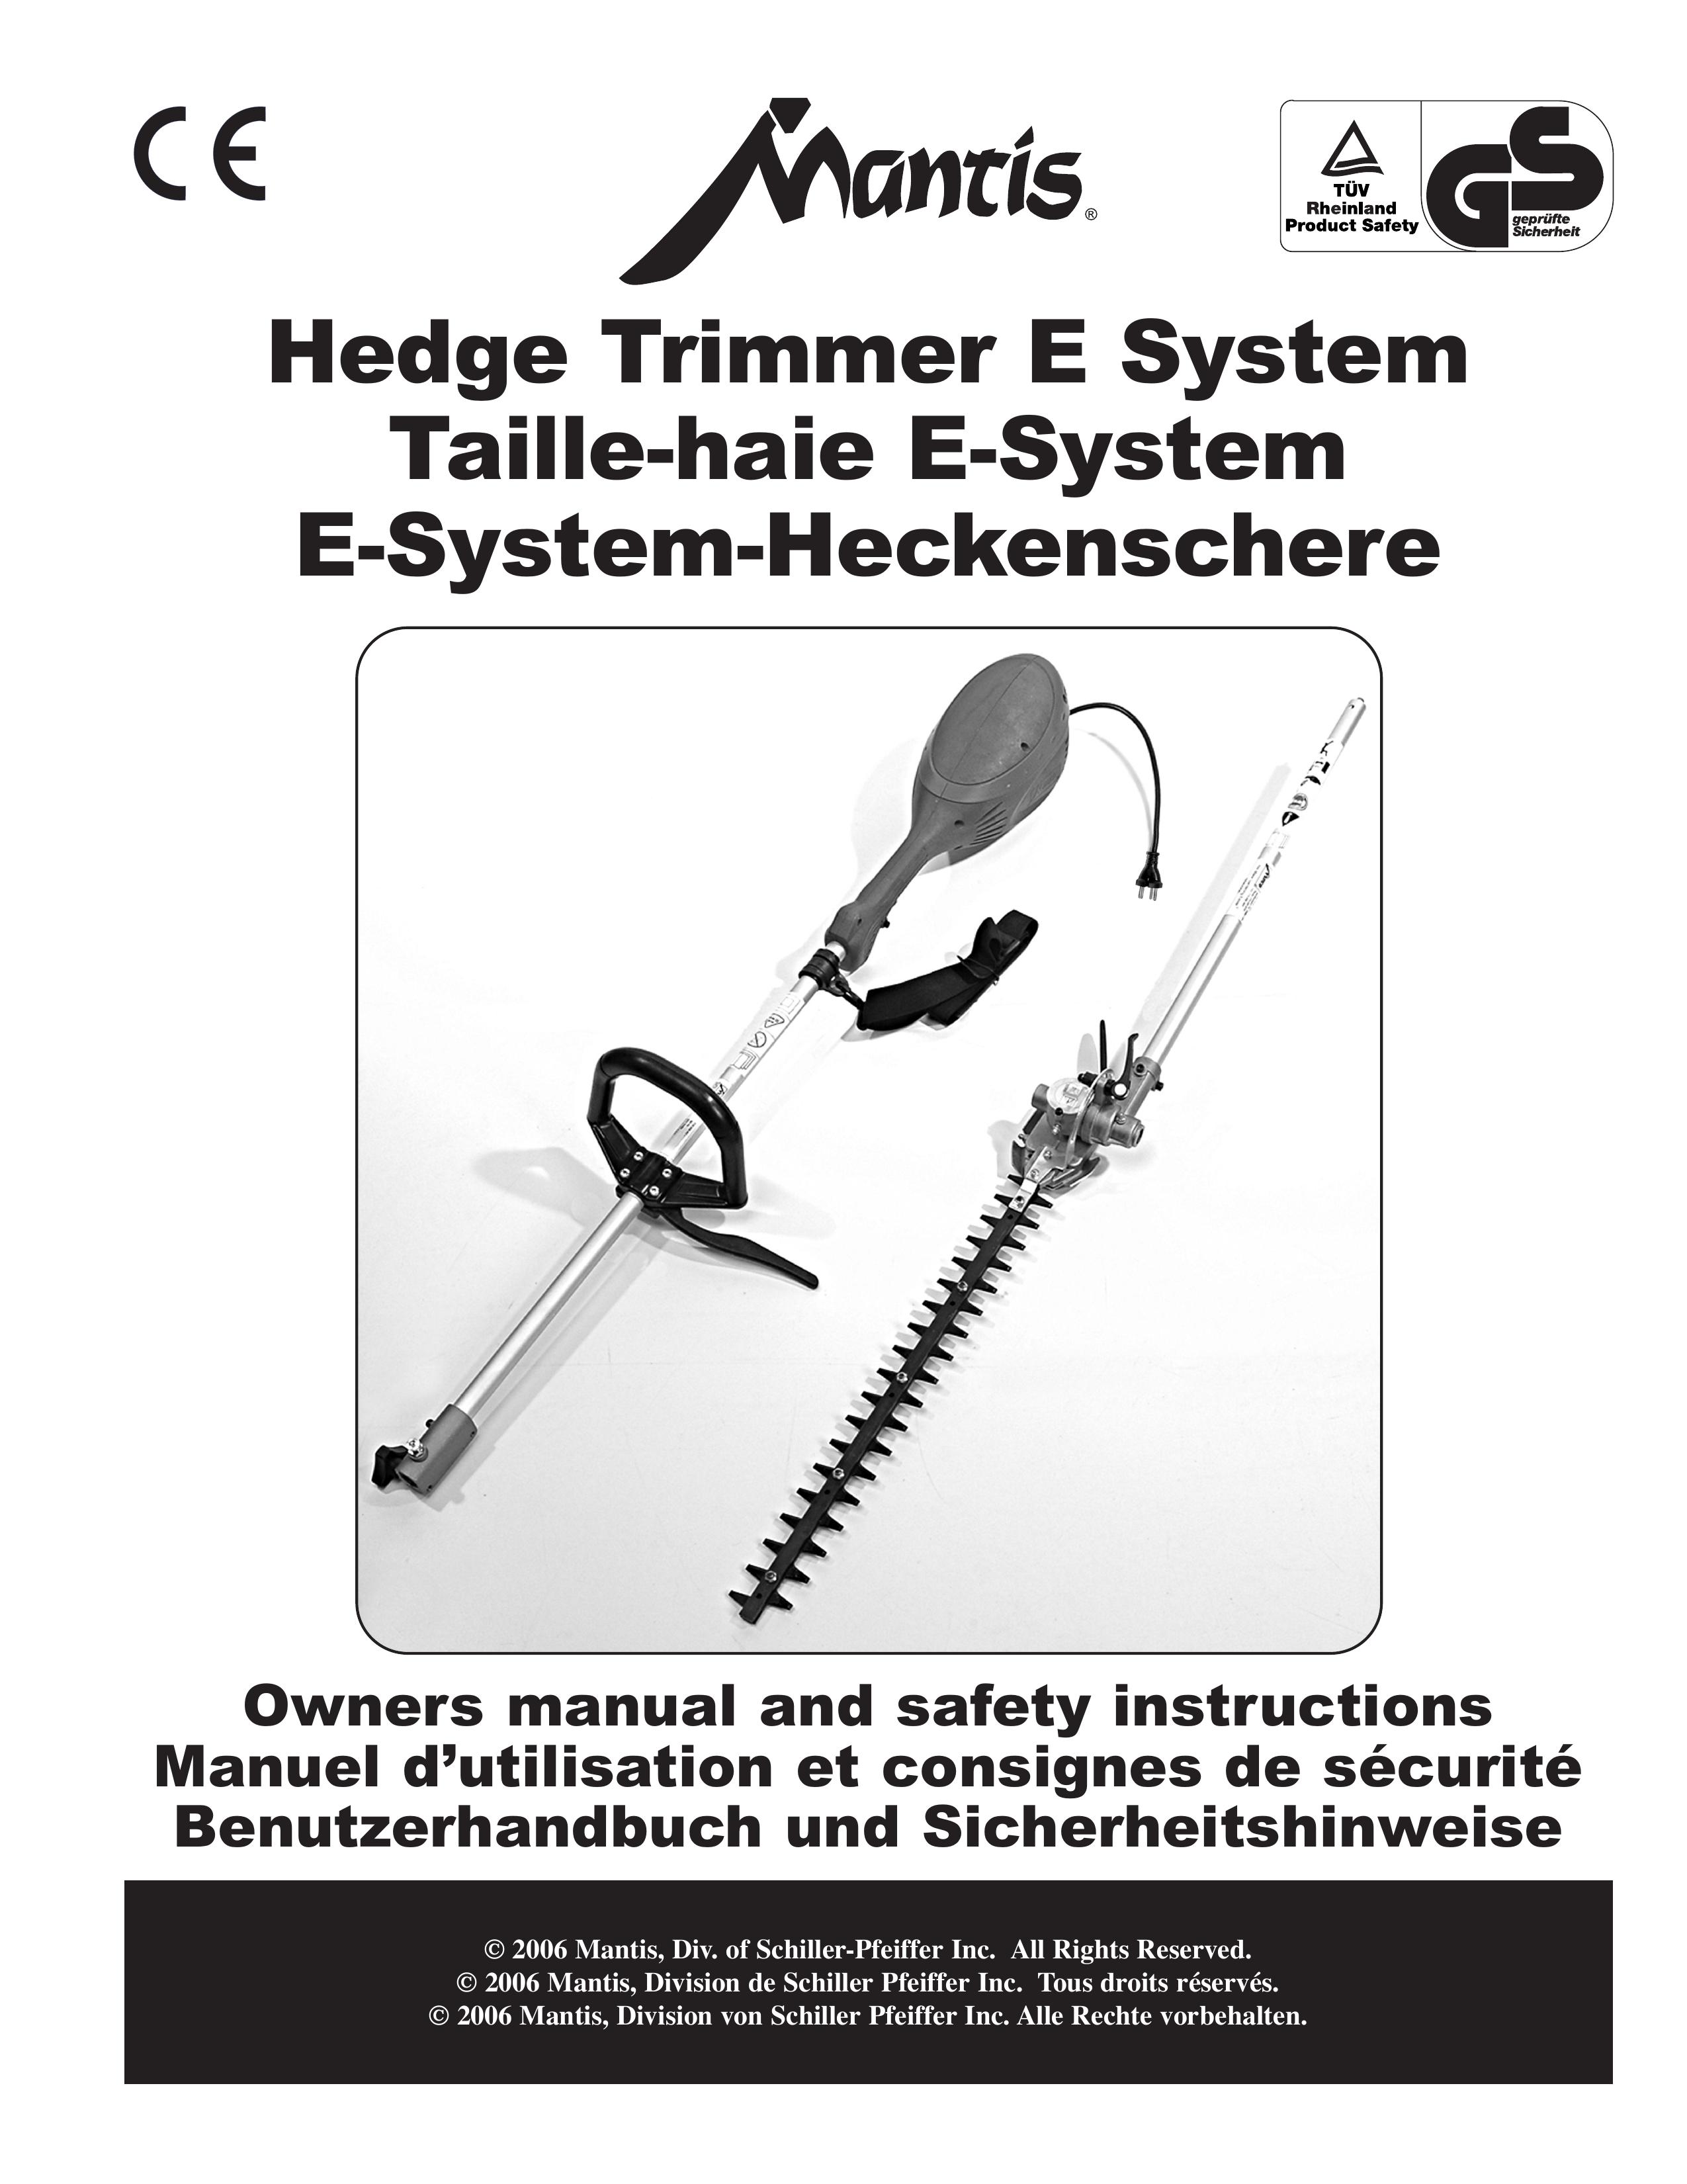 Mantis Hedge Trimmer E System Trimmer User Manual